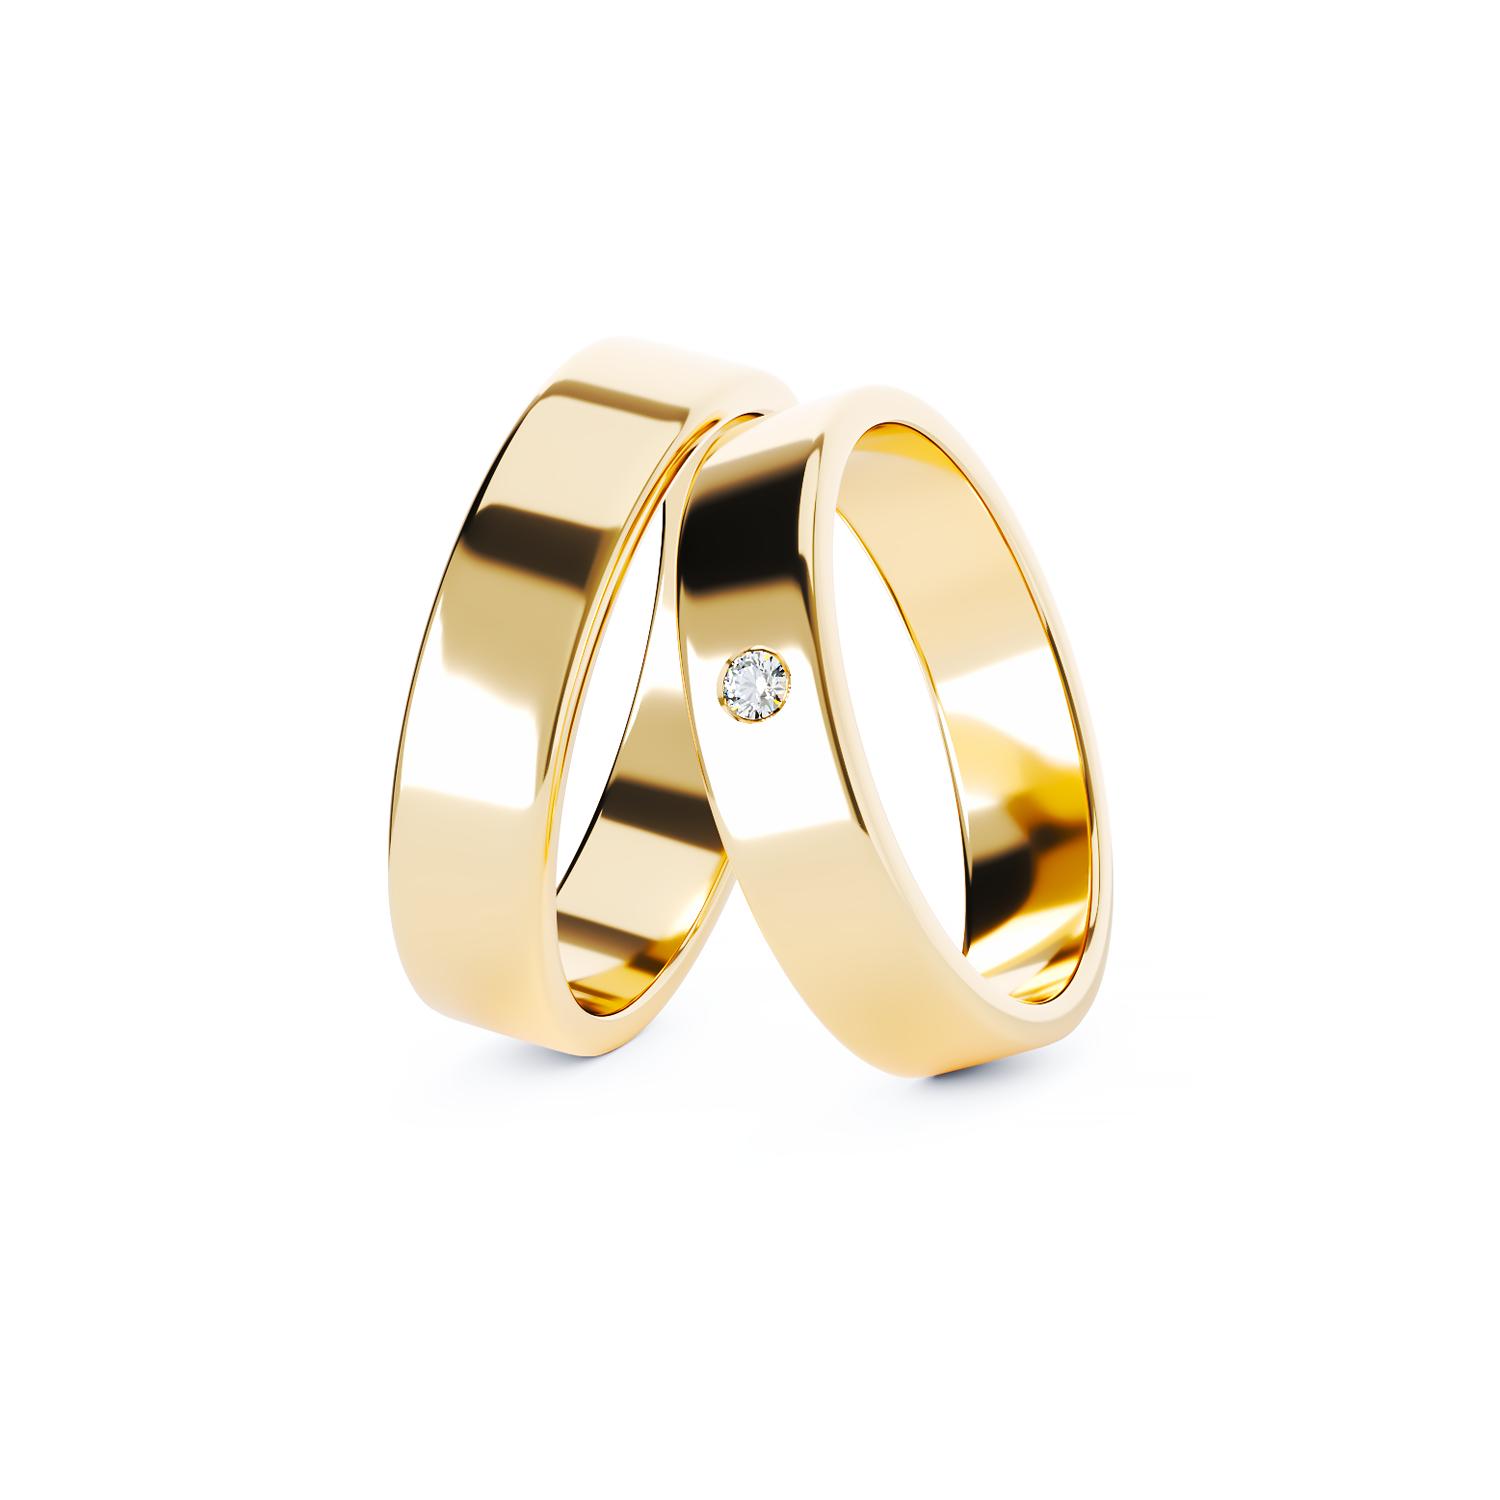 C441 gold wedding rings